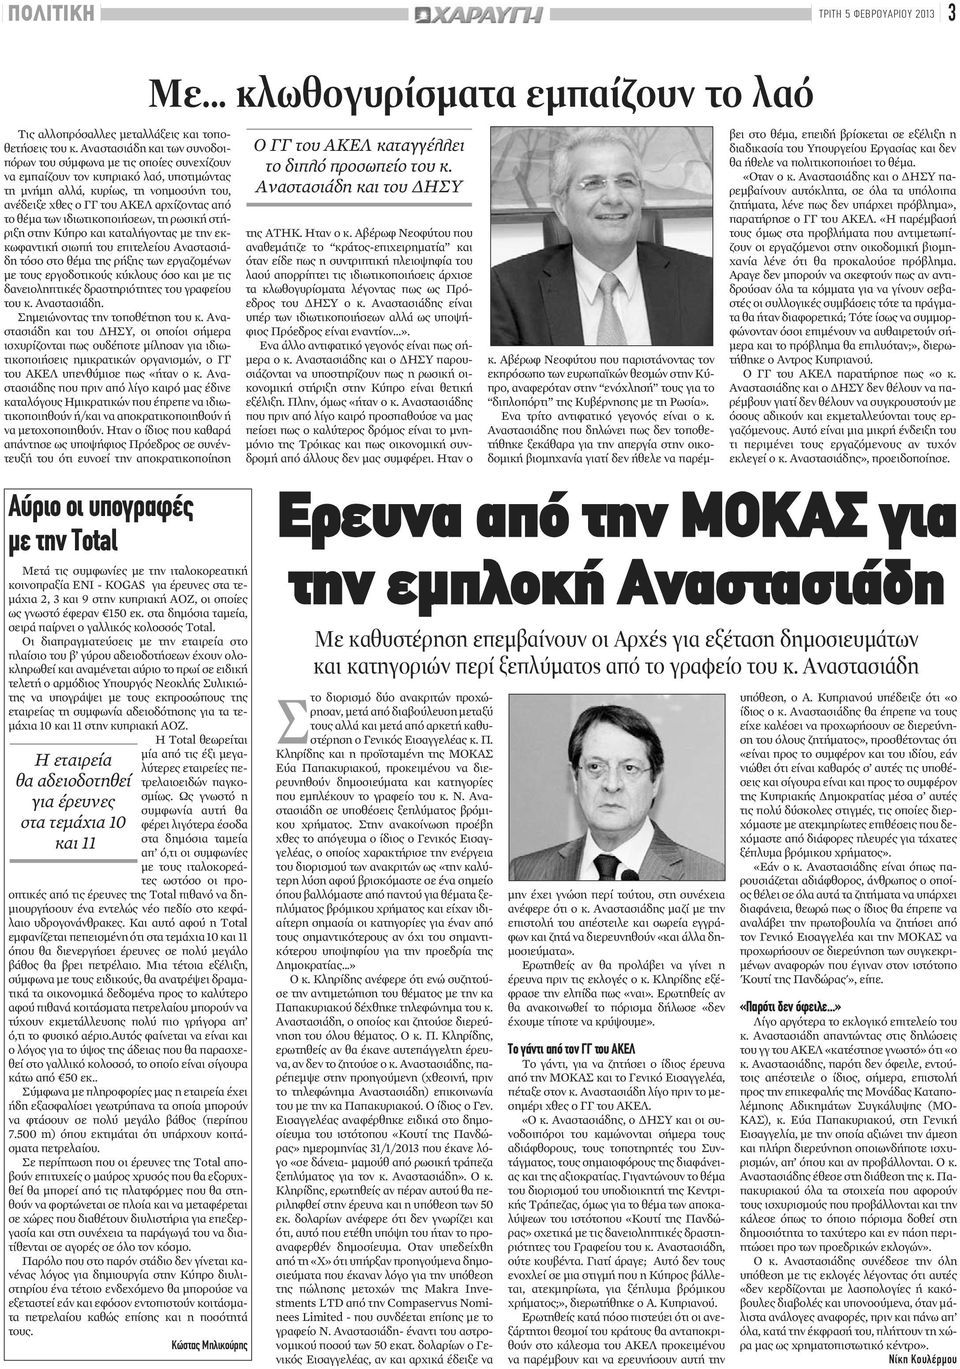 θέμα των ιδιωτικοποιήσεων, τη ρωσική στήριξη στην Κύπρο και καταλήγοντας με την εκκωφαντική σιωπή του επιτελείου Αναστασιάδη τόσο στο θέμα της ρήξης των εργαζομένων με τους εργοδοτικούς κύκλους όσο